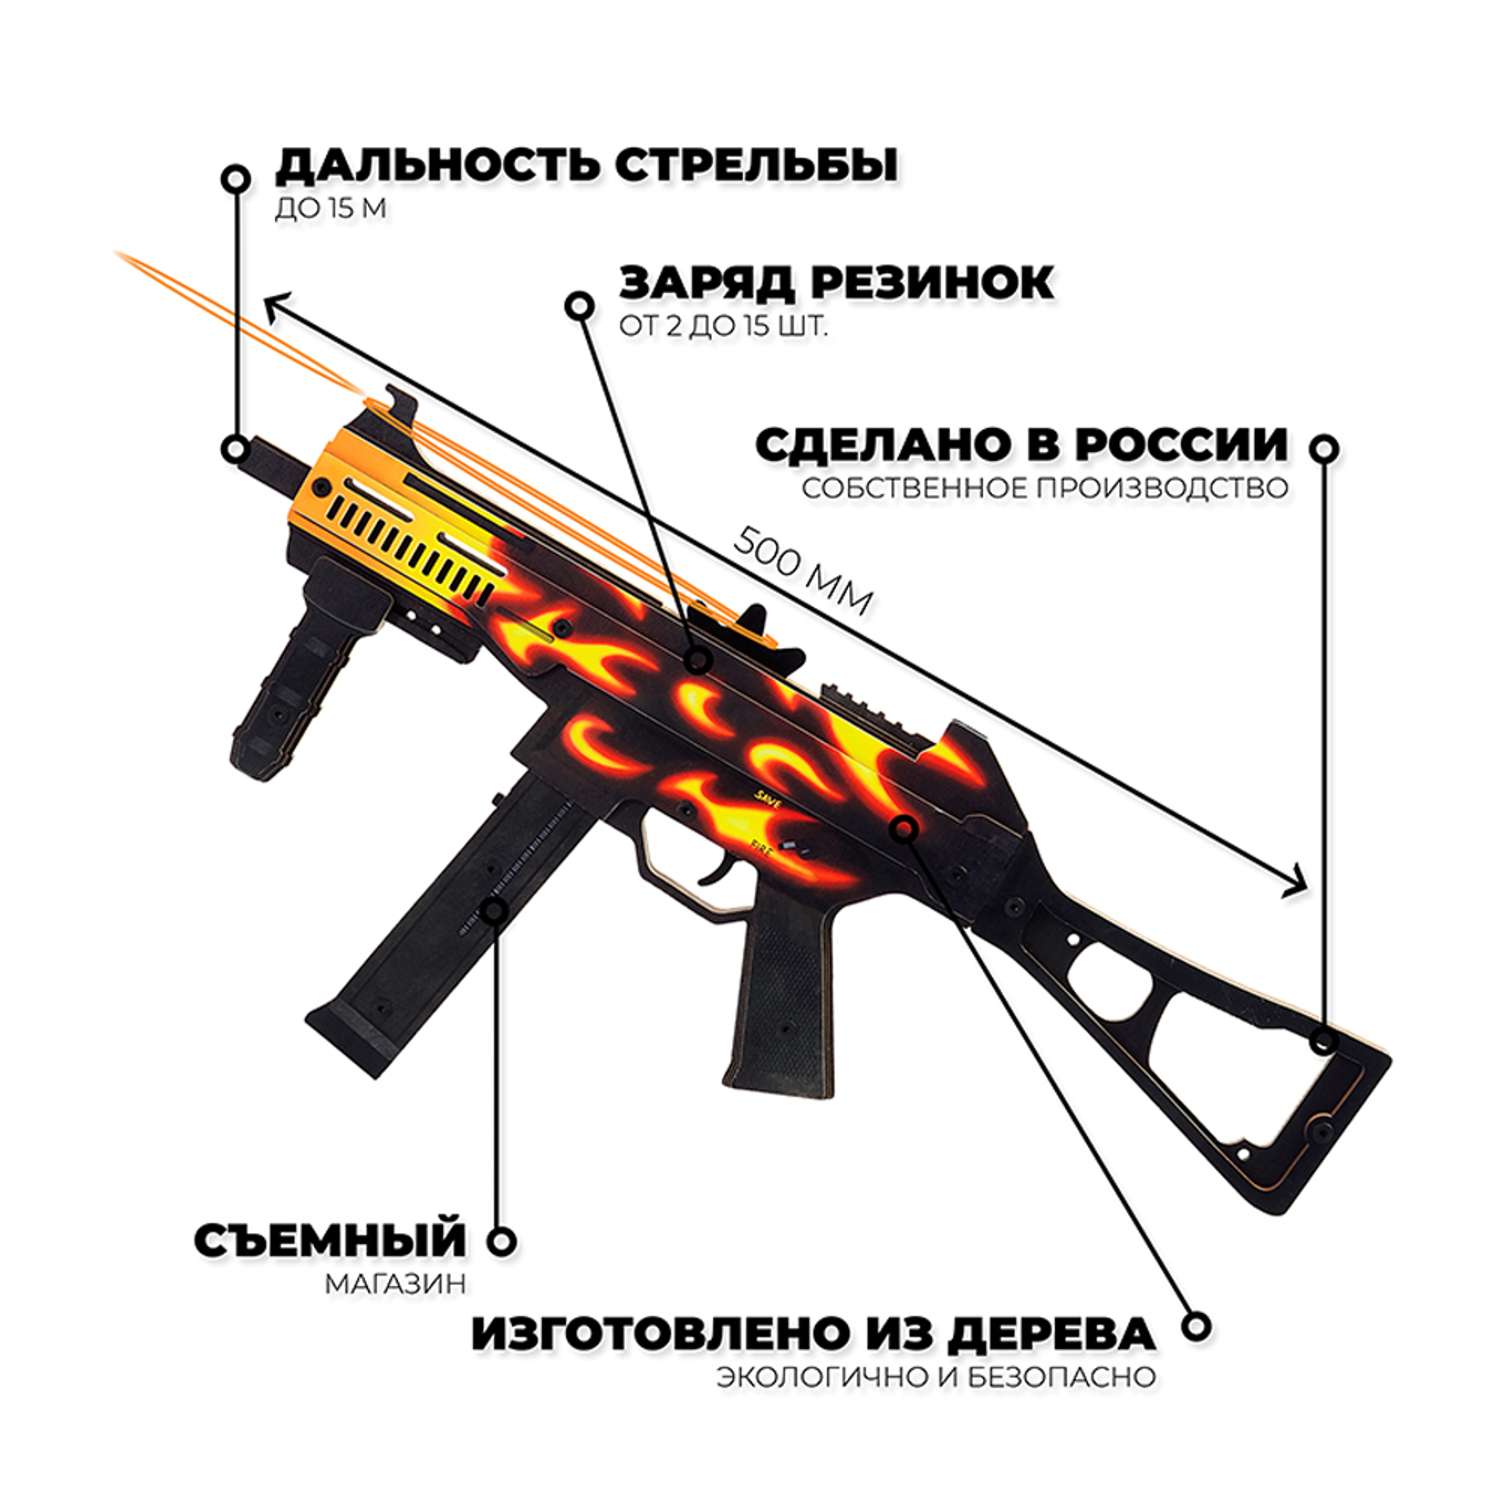 Пистолет-пулемет Go-Wood UMP-45 версия 1.6 Пламя деревянный резинкострел - фото 2